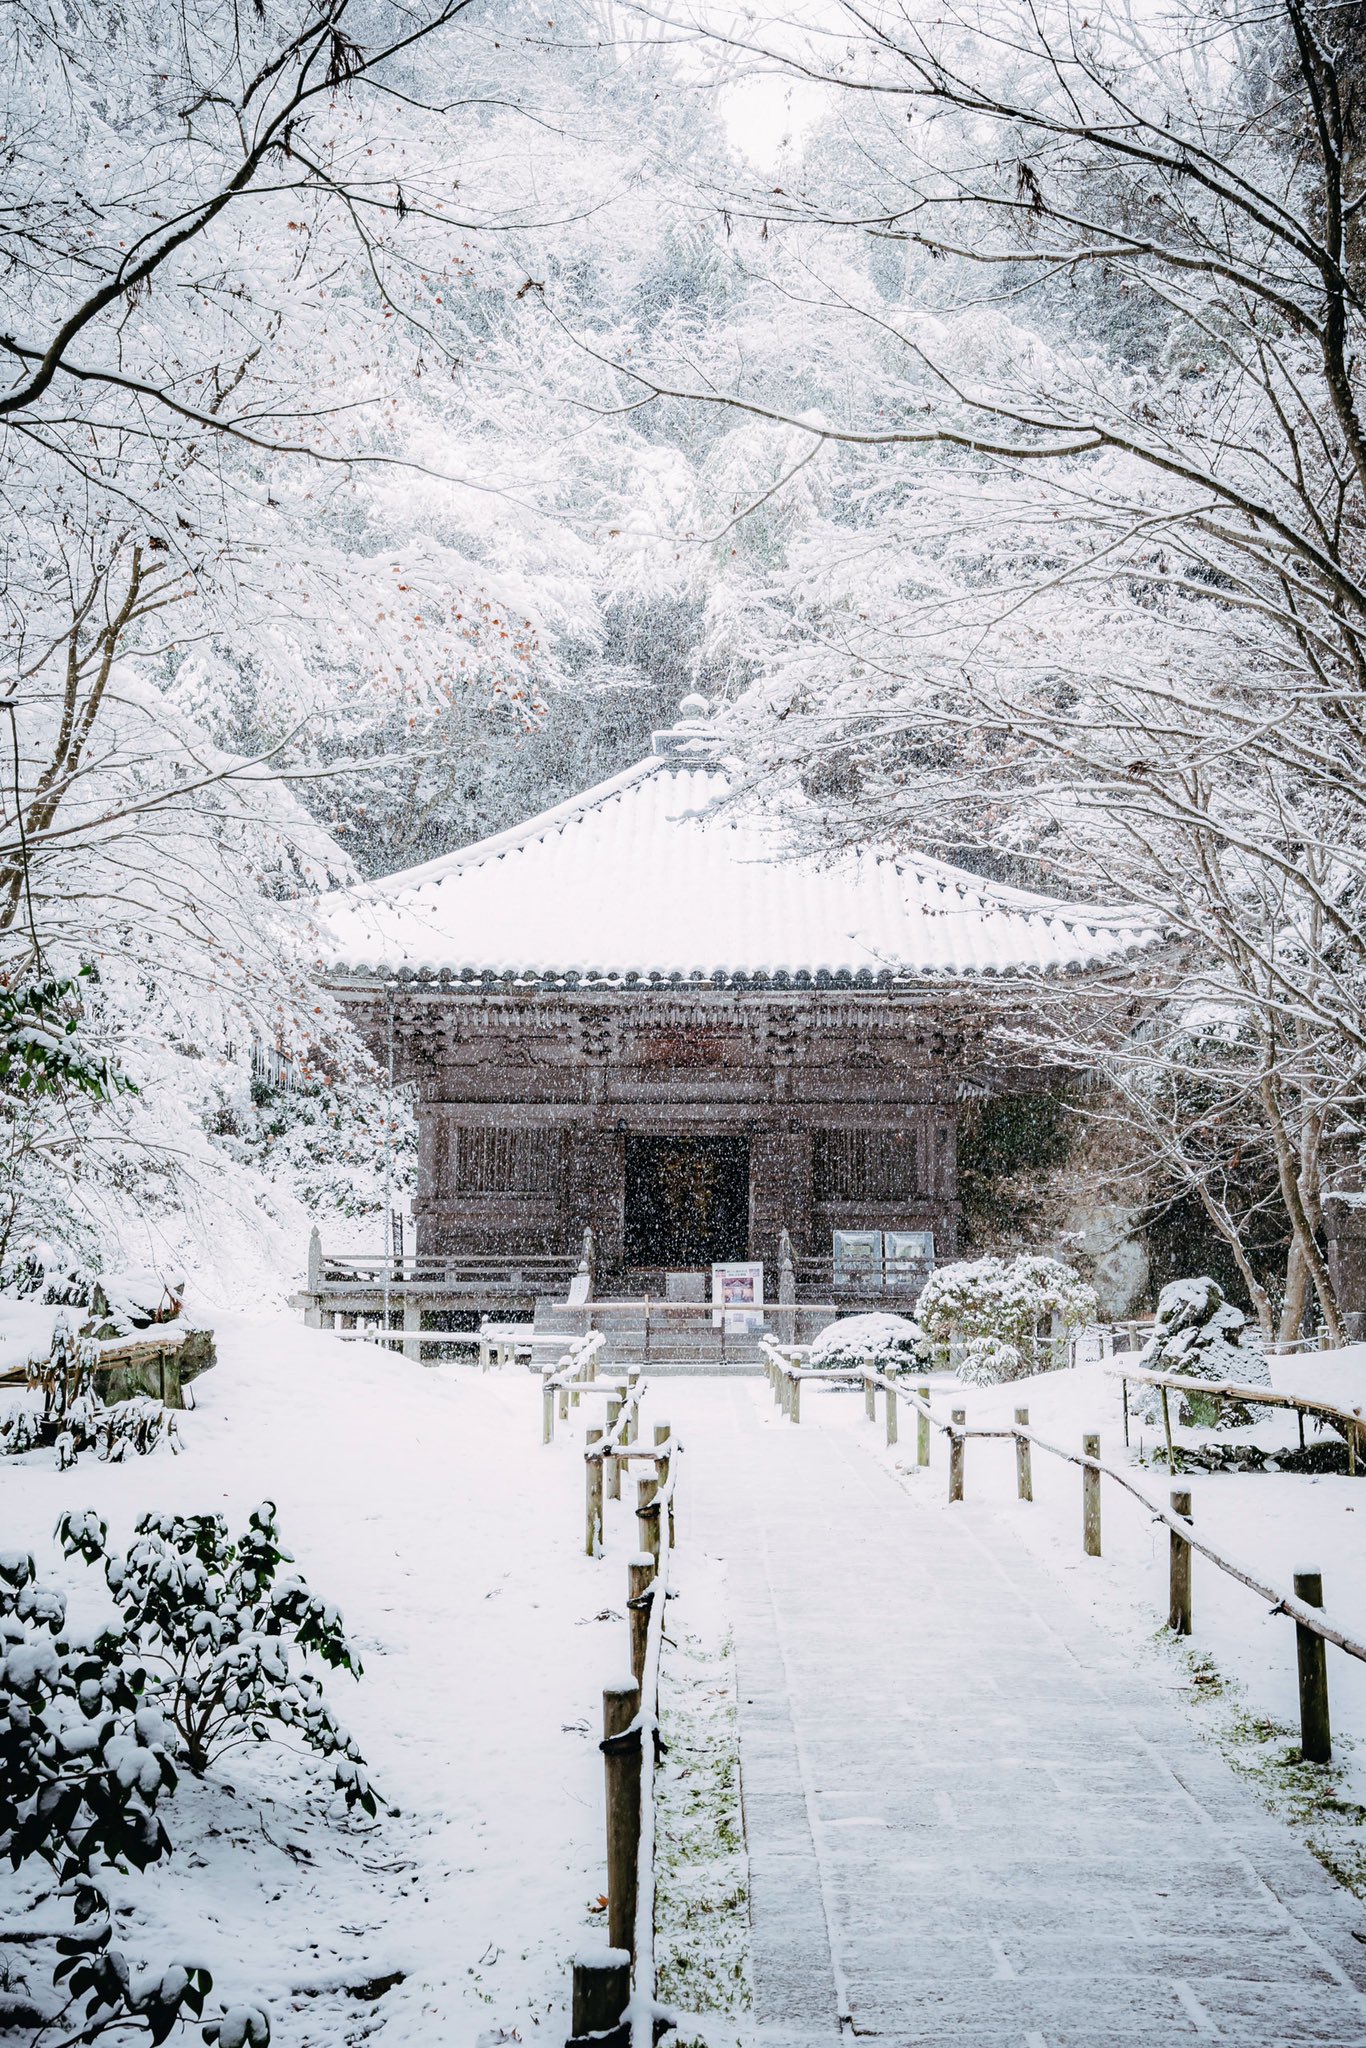 Chùa tuyết Nhật Bản: Tận hưởng khung cảnh yên bình và thanh tịnh của chùa tuyết Nhật Bản với hình ảnh đẹp này. Chùa tuyết là một phần của nghi lễ để phân biệt tách sự chuyển tiếp từ năm cũ sang năm mới trong đạo Phật Nhật Bản. Hãy khám phá sự tĩnh lặng và bình yên của tôn giáo và văn hóa Nhật Bản với hình ảnh đẹp này.